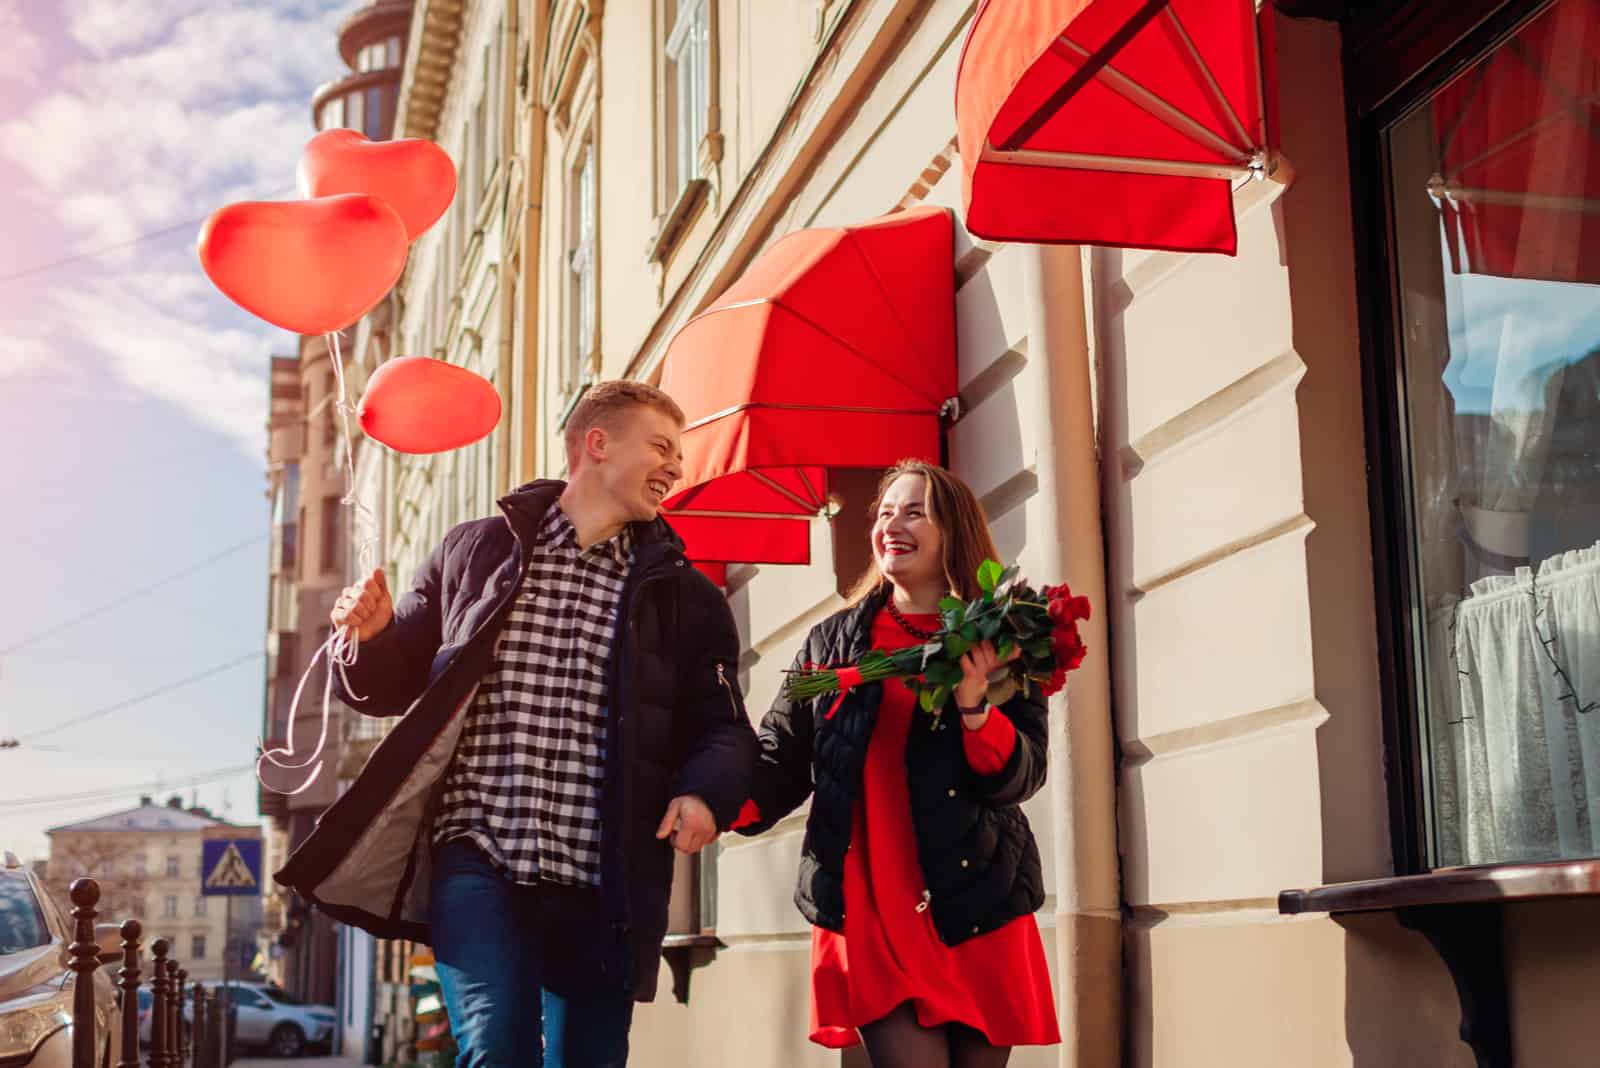 une femme souriante marche dans la rue avec un bouquet de roses et tient la main d'un homme